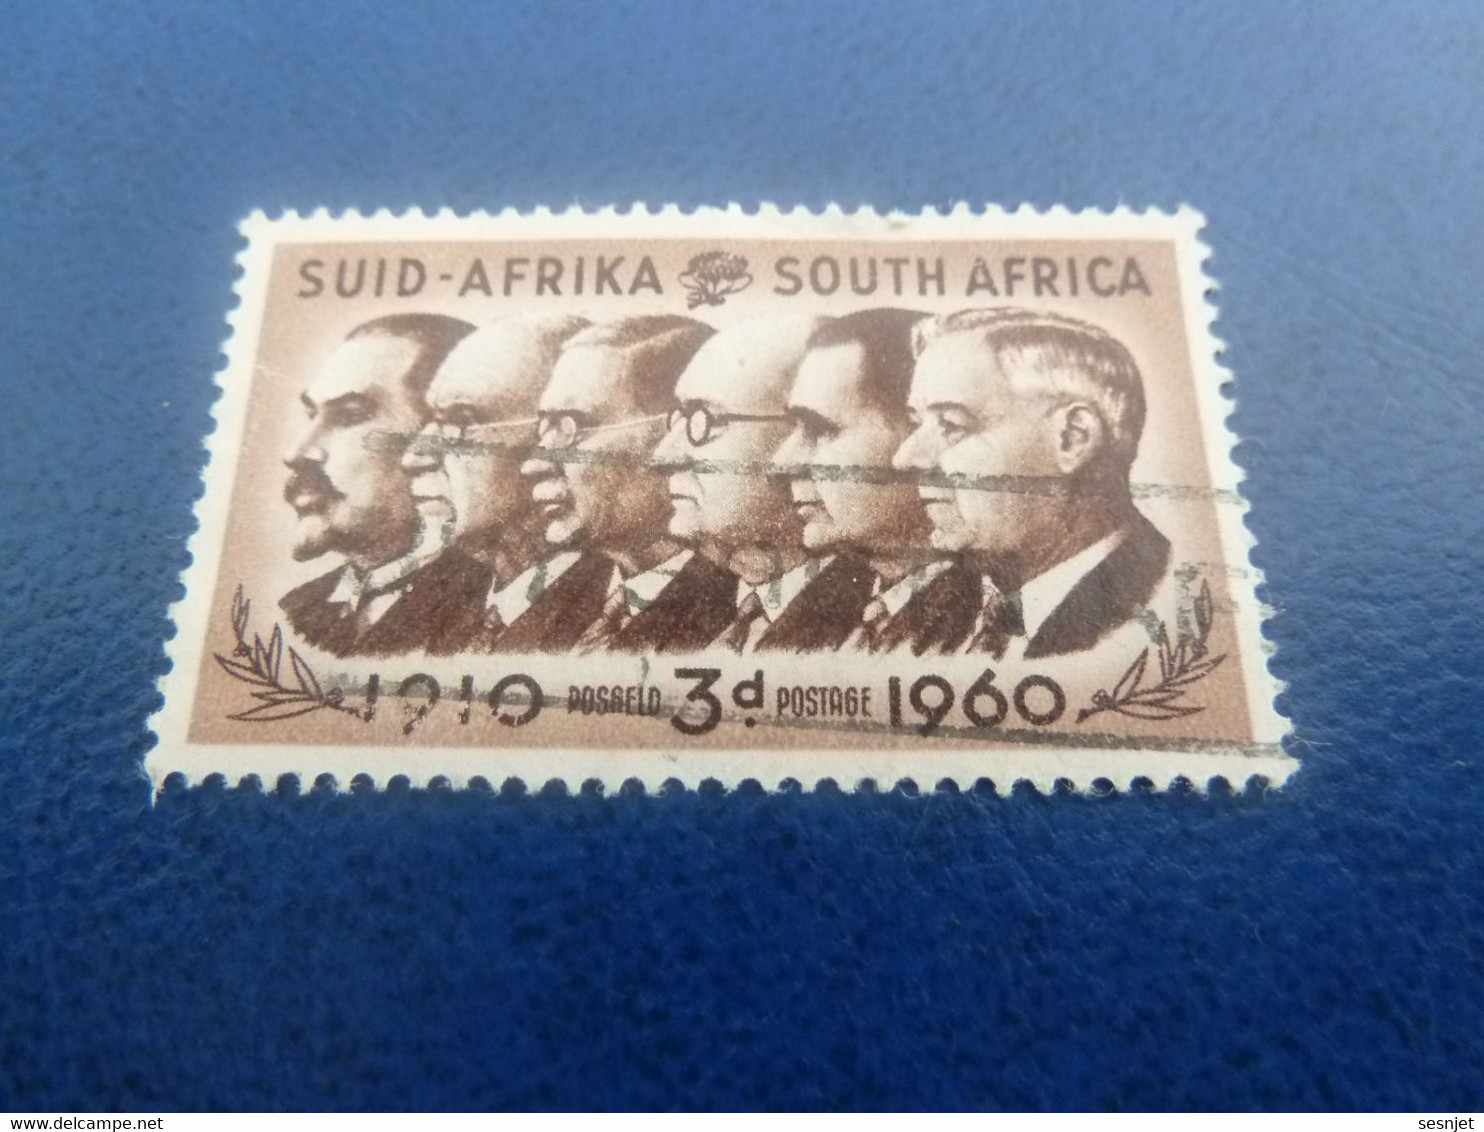 Suid-Africa - South Africa - Célébrités - 3 D. - Postage - Brun Et Brun Foncé - Oblitéré - Année 1960 - - Usati